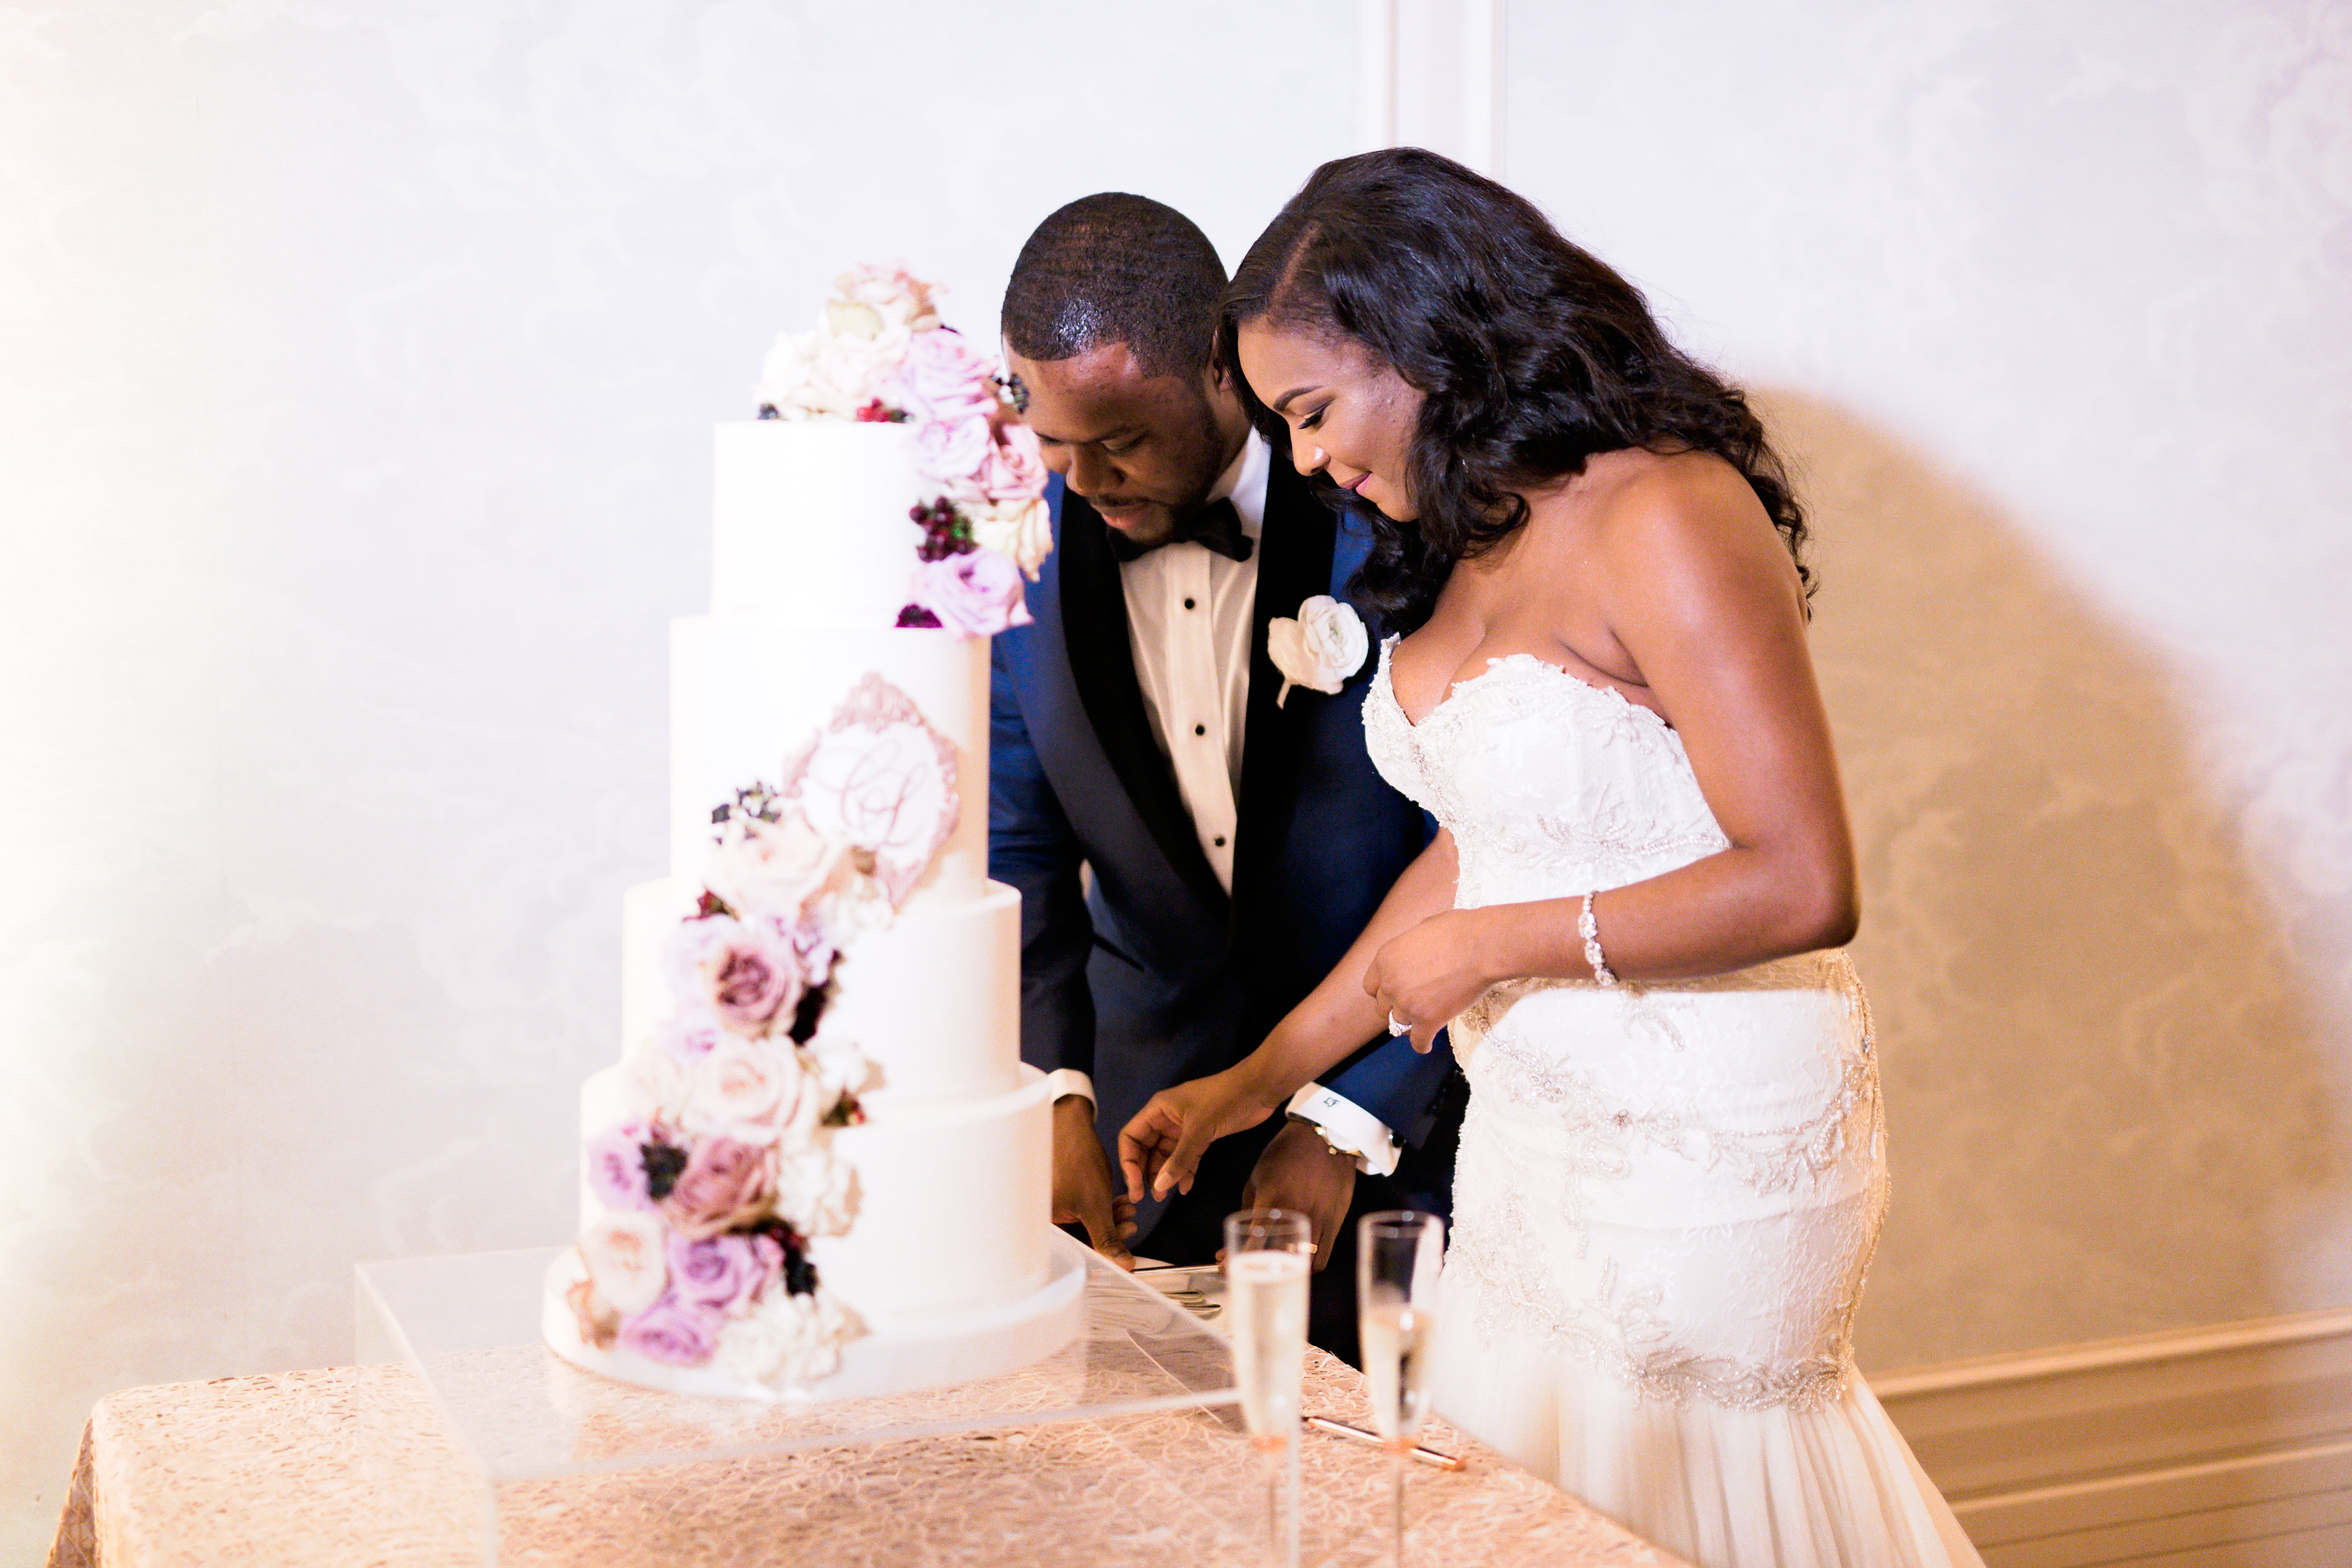 cake cutting, wedding cake design